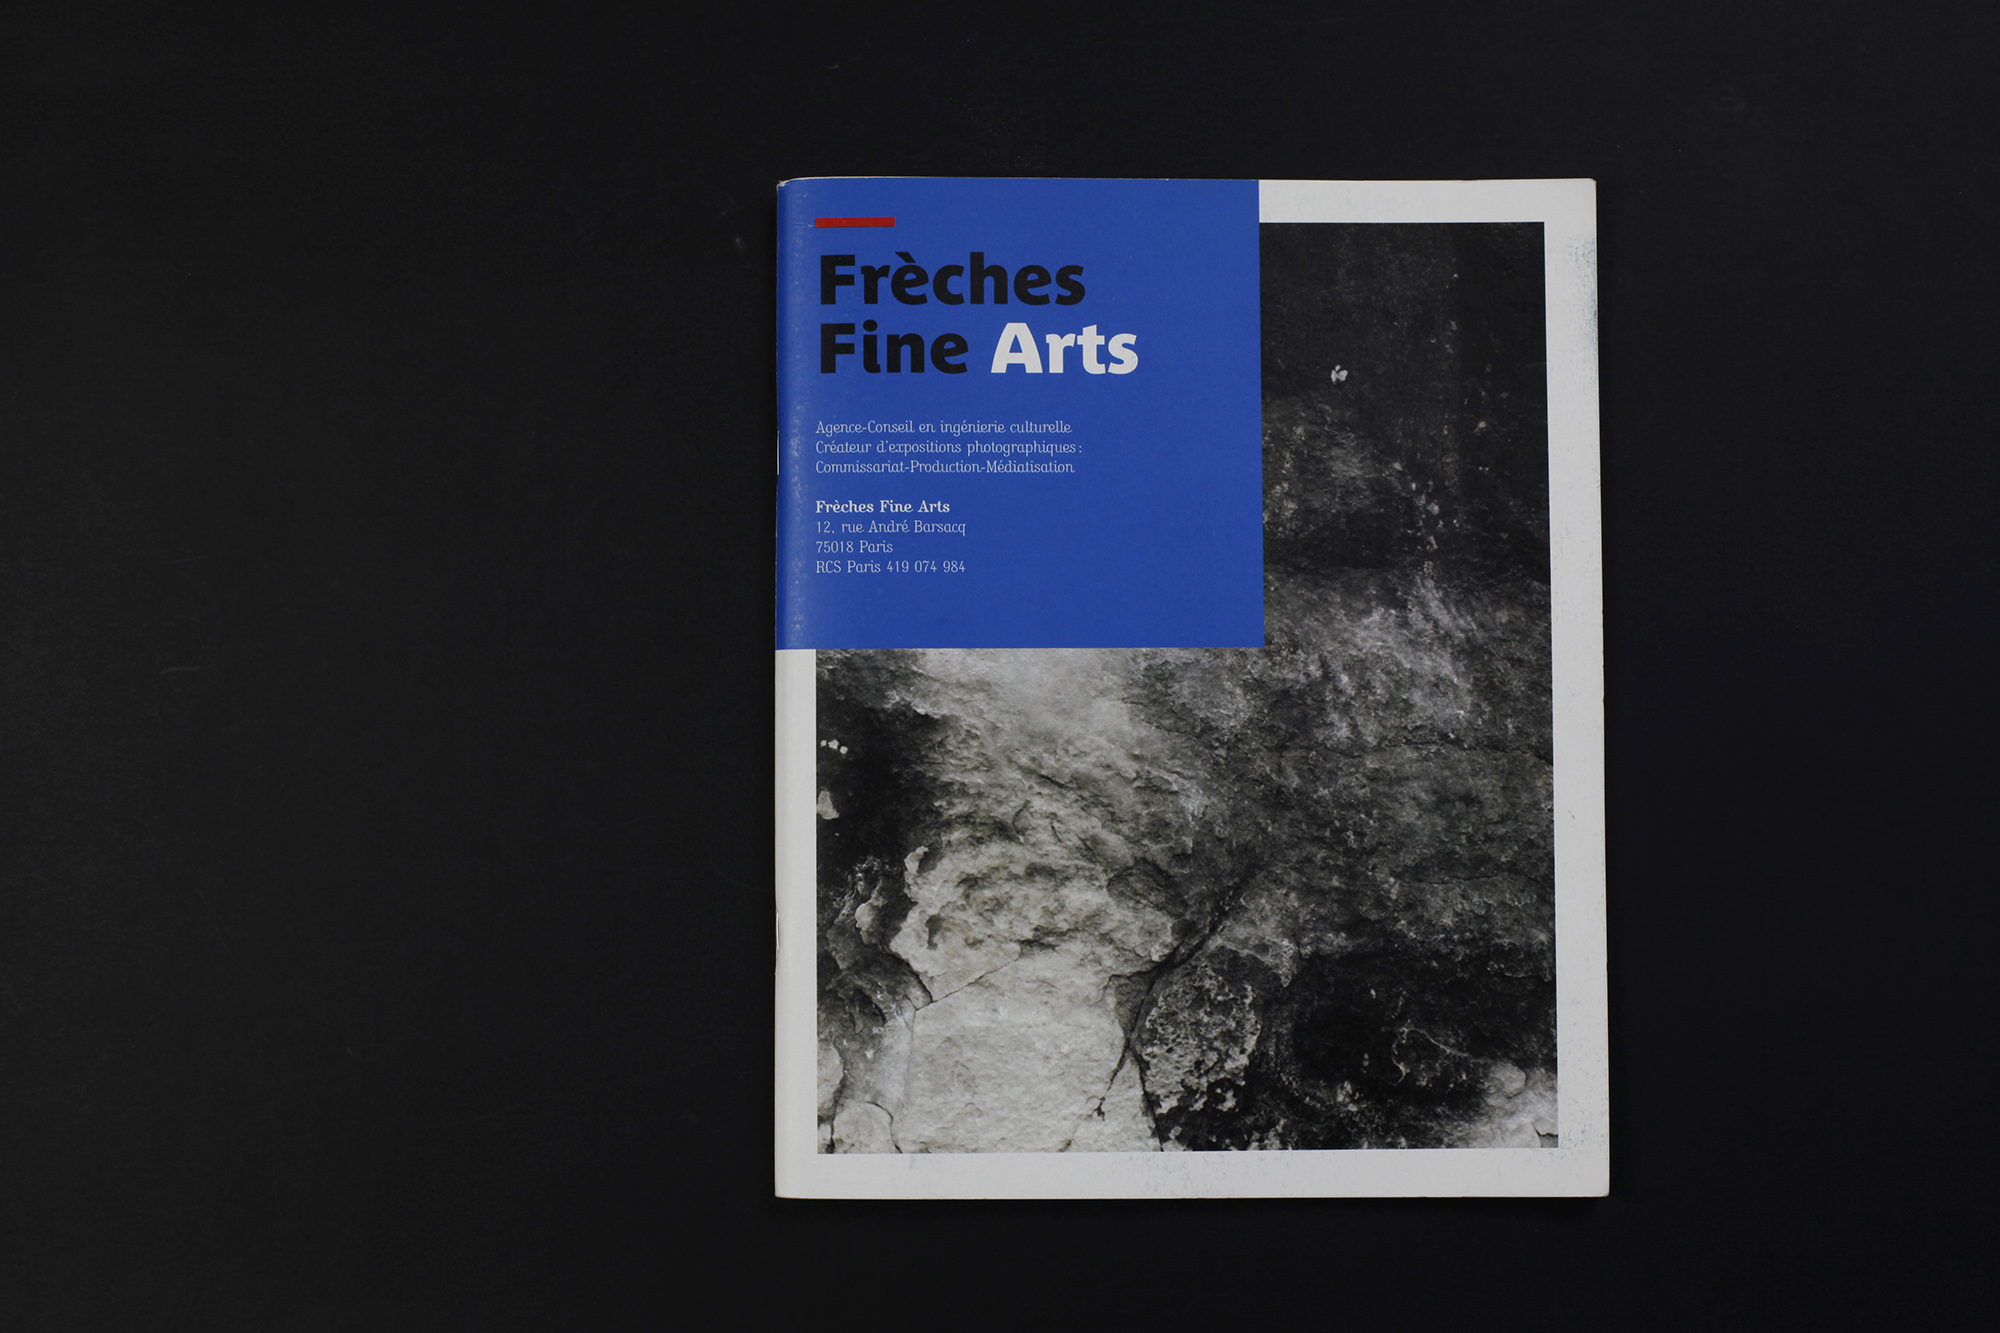 Freches FinArt, 2010